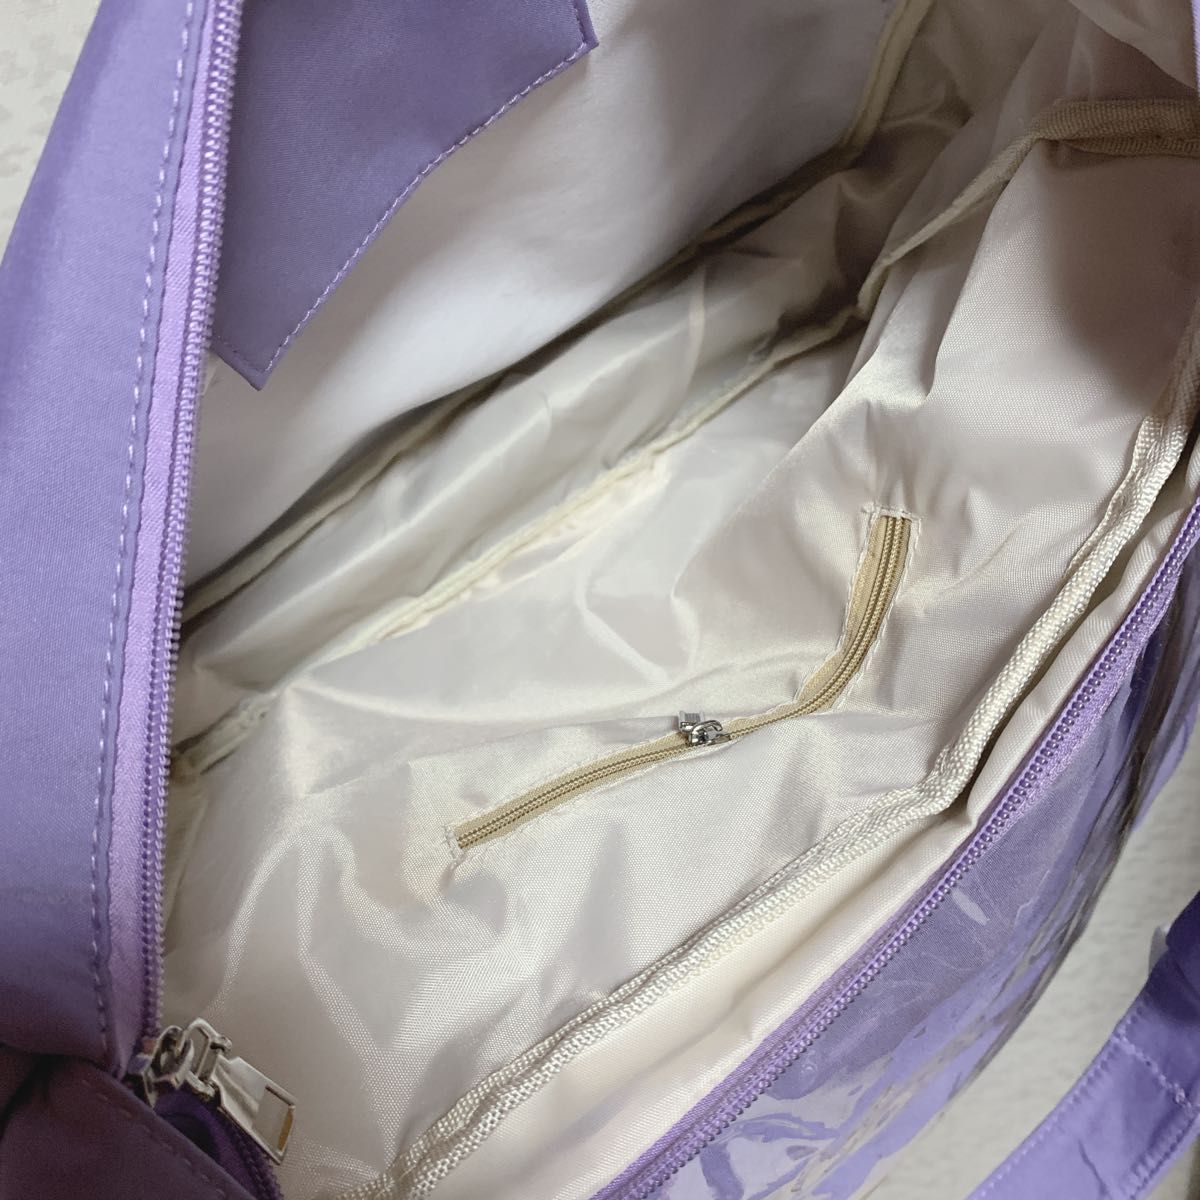 痛バッグ A4  痛バ 推し オタ活 クリア 透明 トートバッグ パープル 紫  ショルダーバッグ  レディース ハンドバッグ